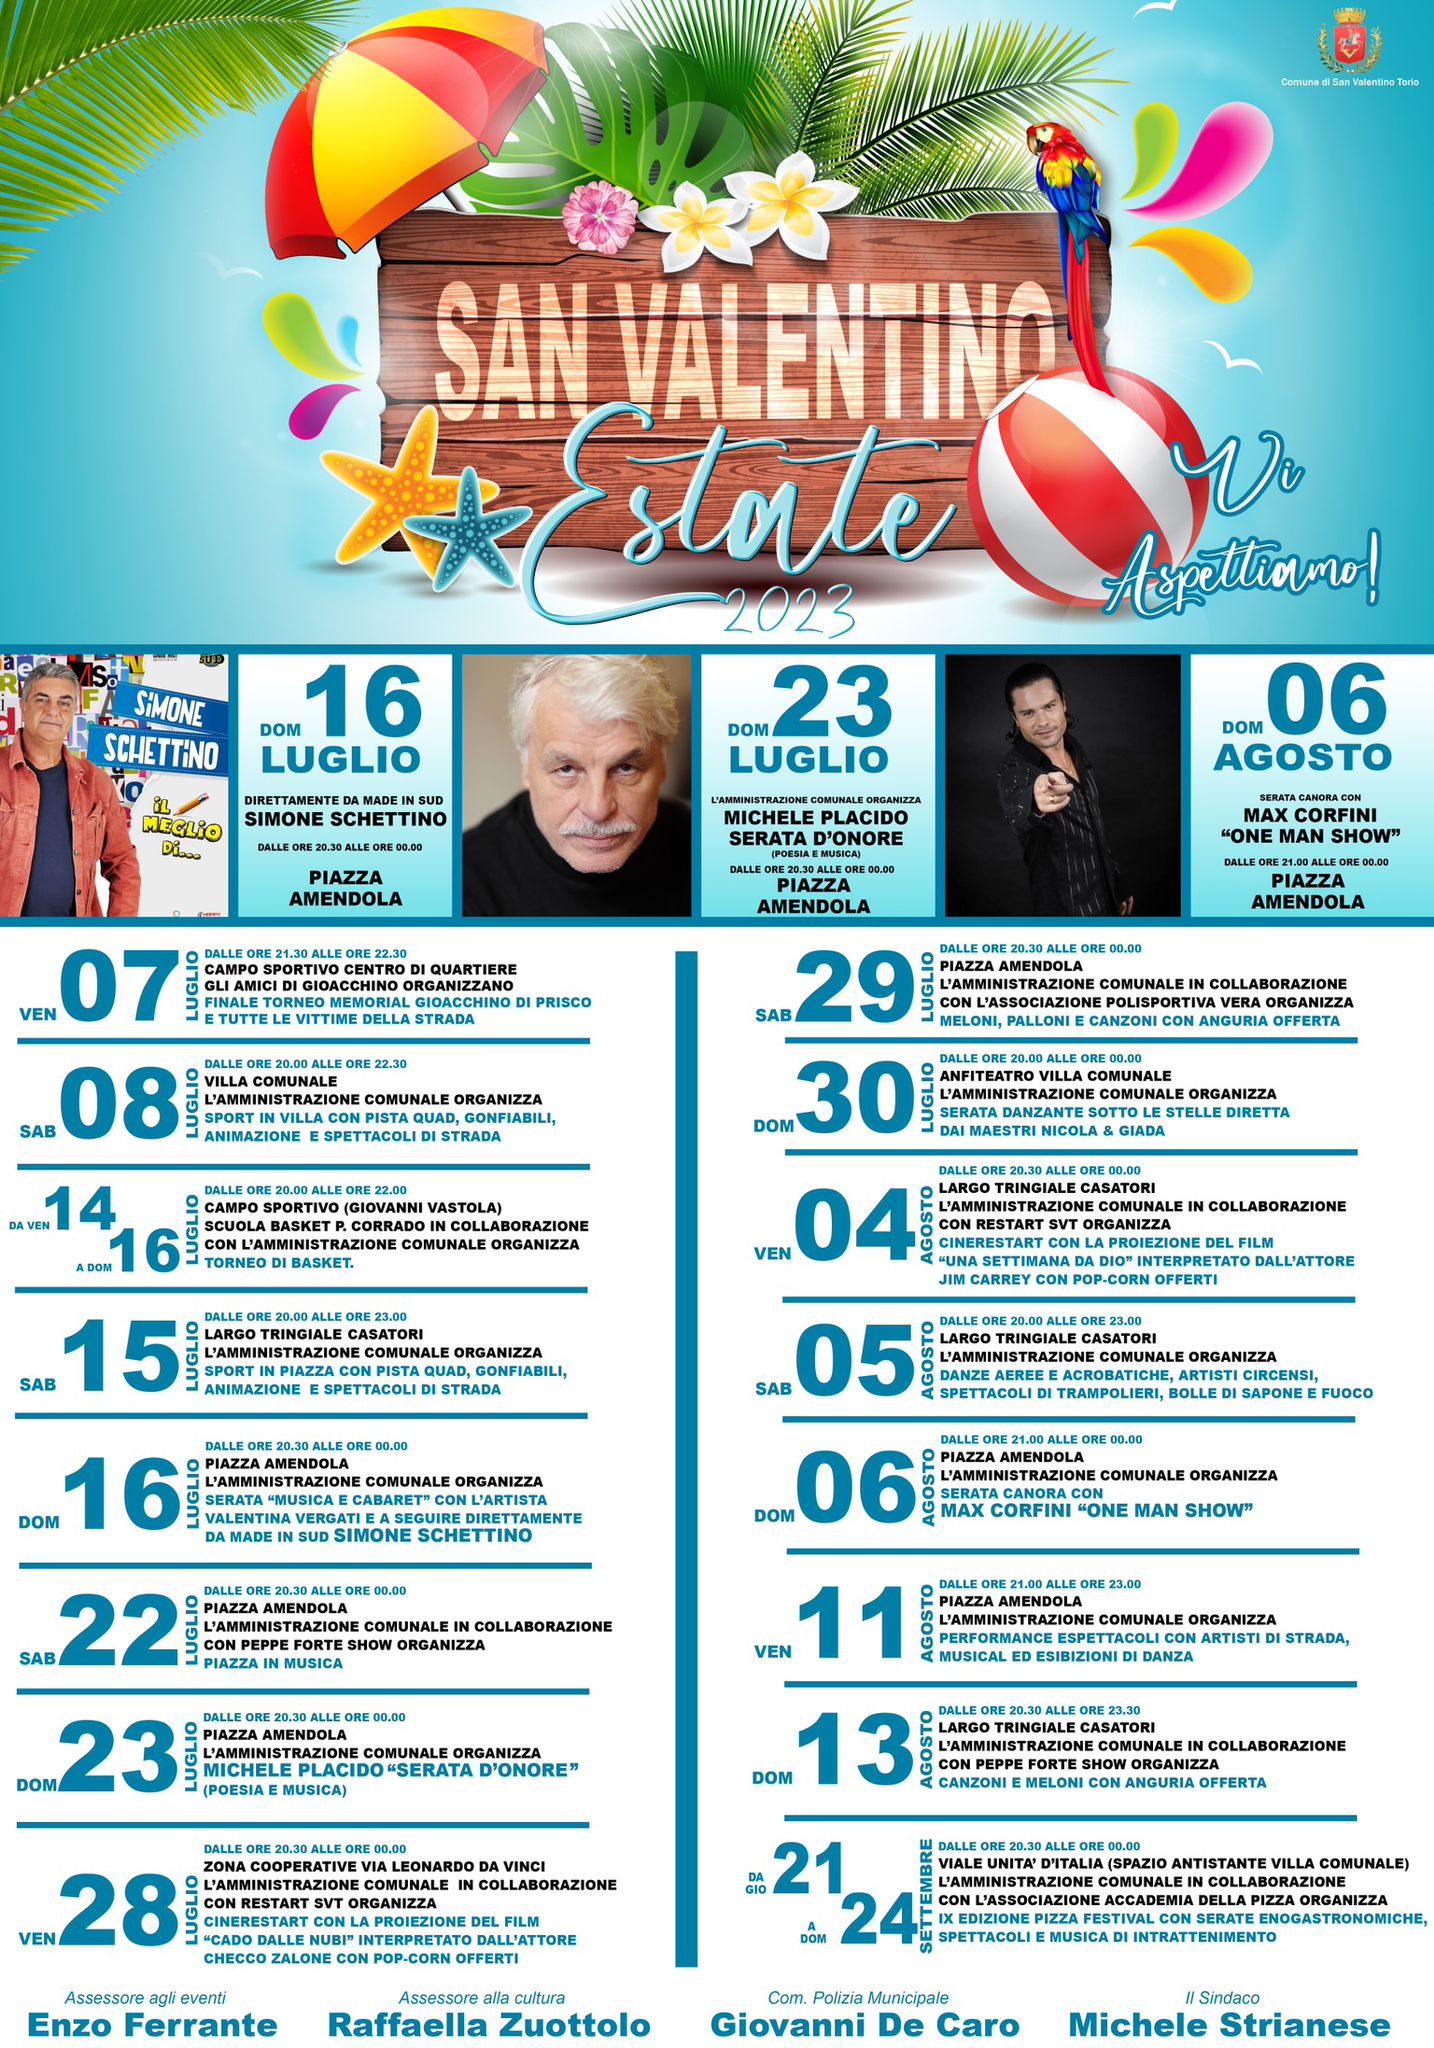 San Valentino Torio: Estate San Valentinese 2023 con Michele Placido